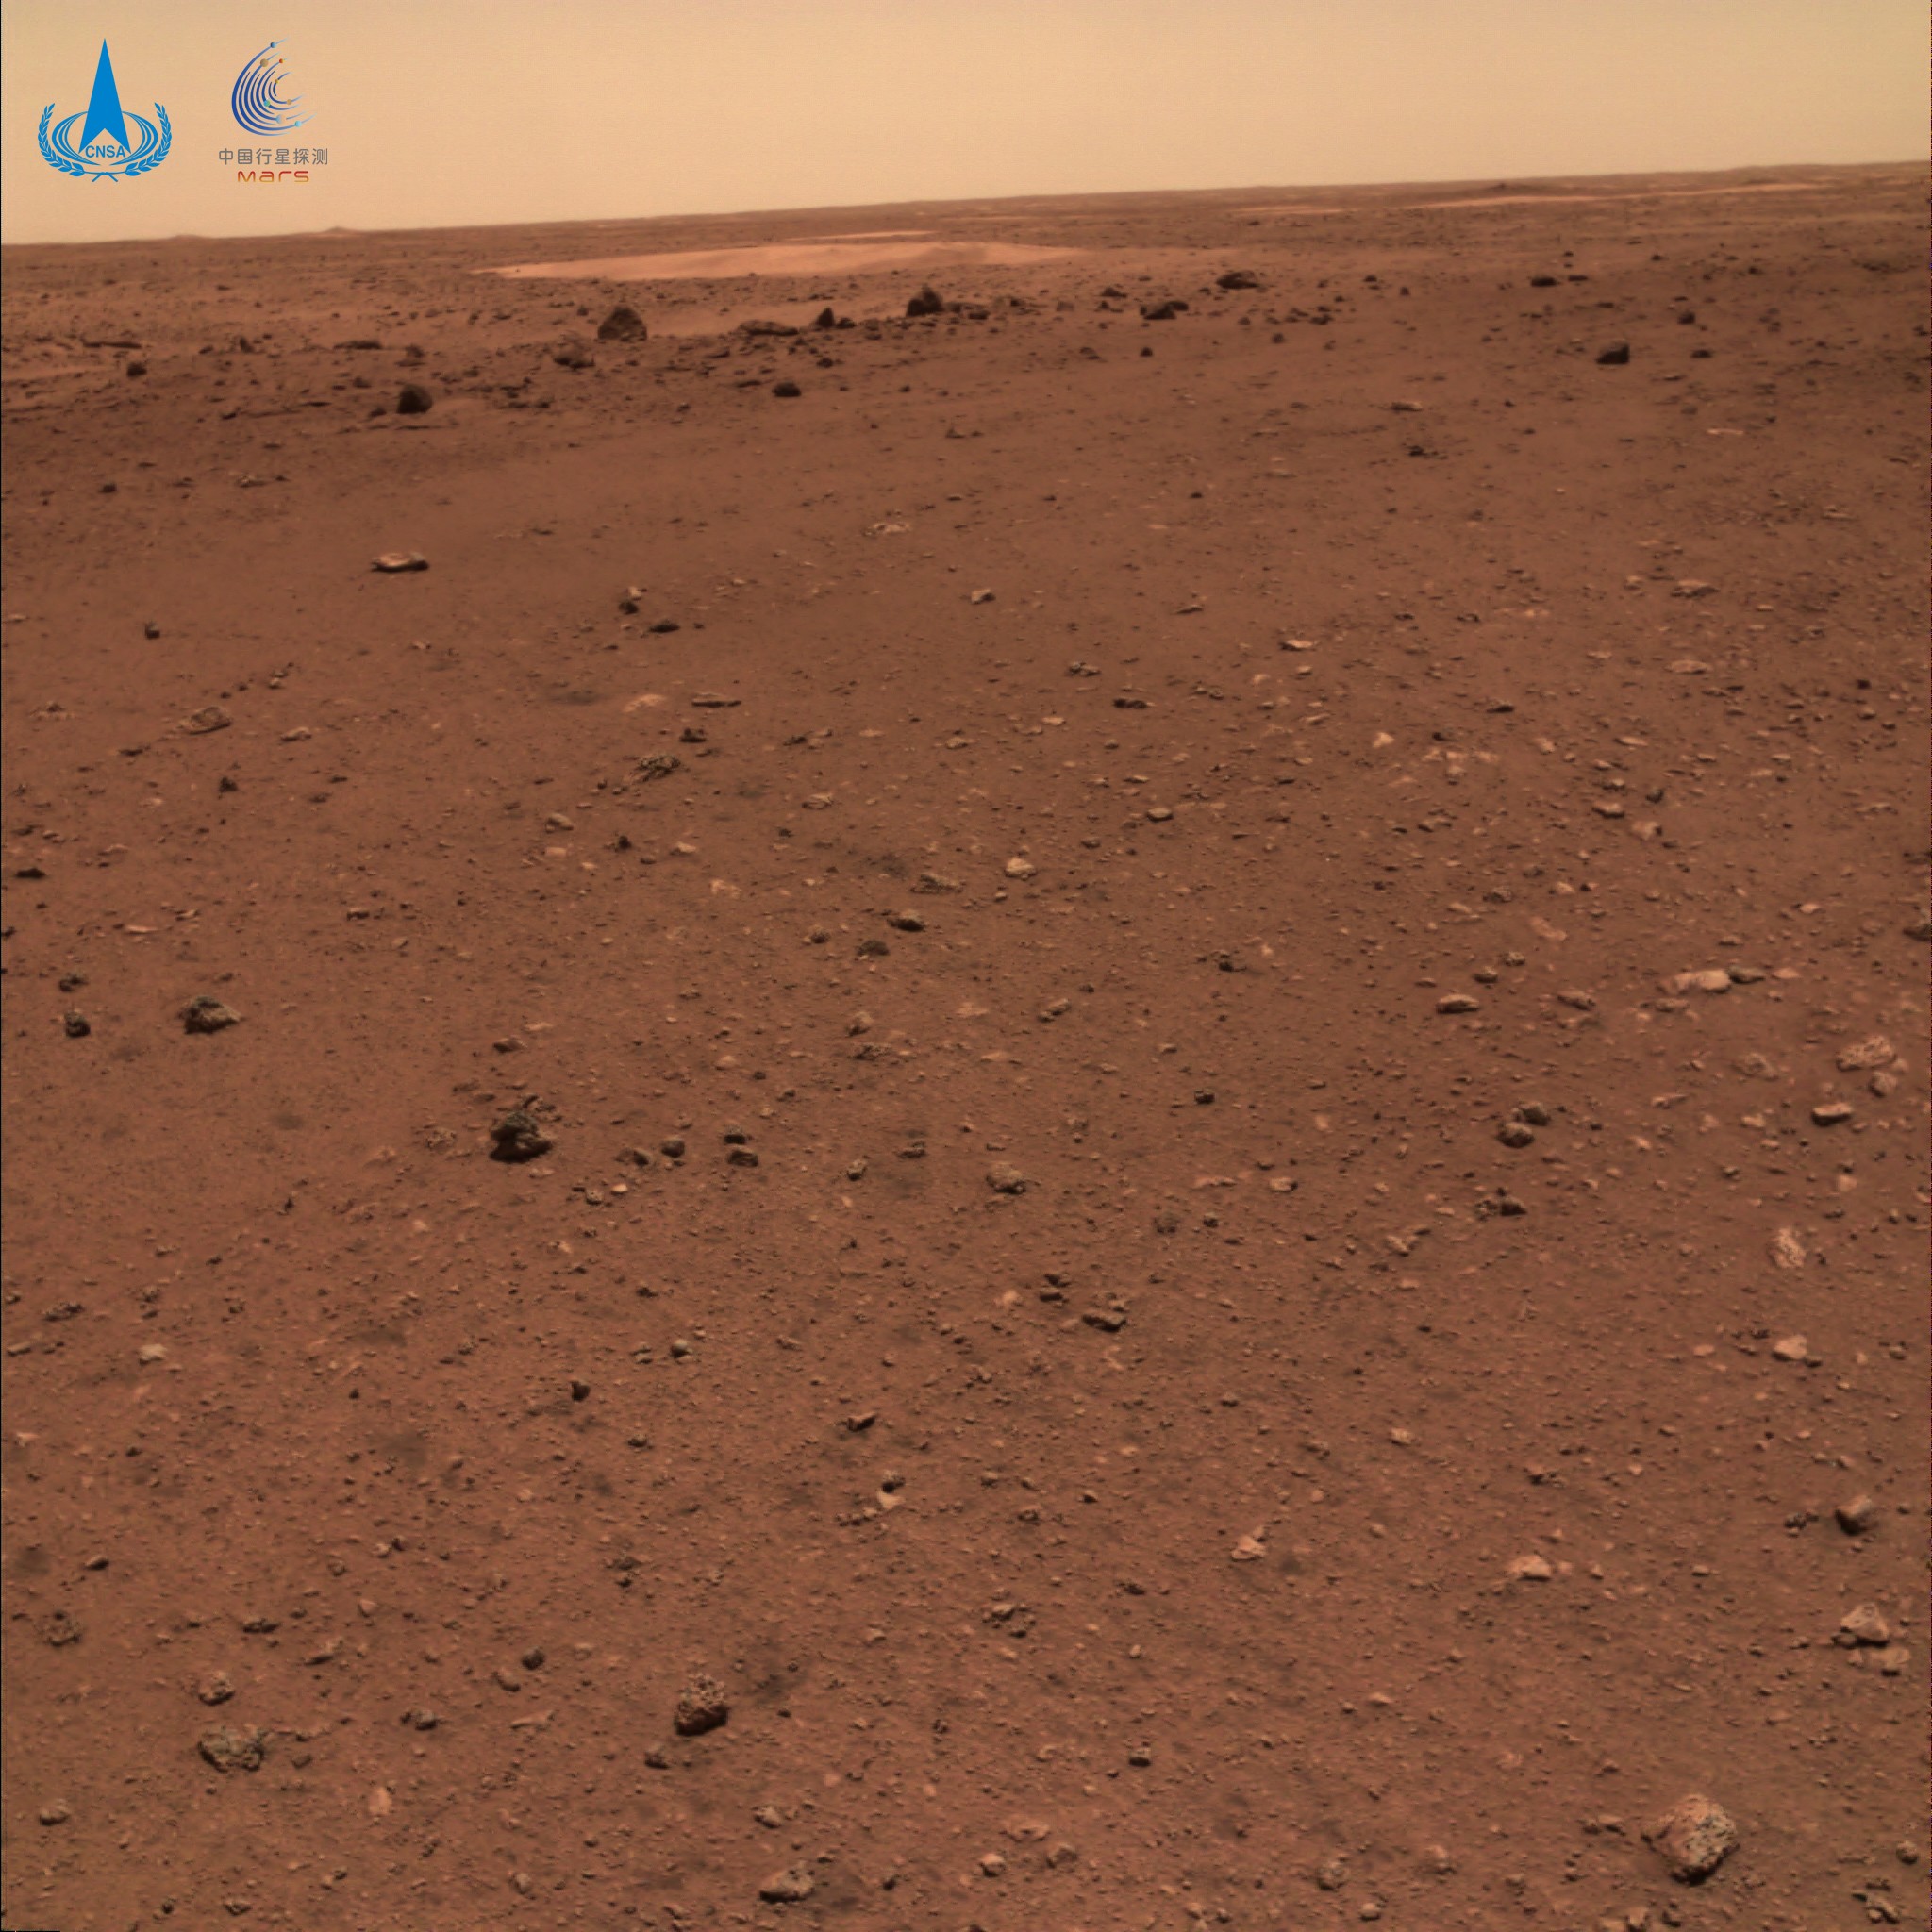 Imagem da superfície alaranjada de Marte com dunas ao longe  (Foto: Administração Espacial Nacional da China (CNSA))